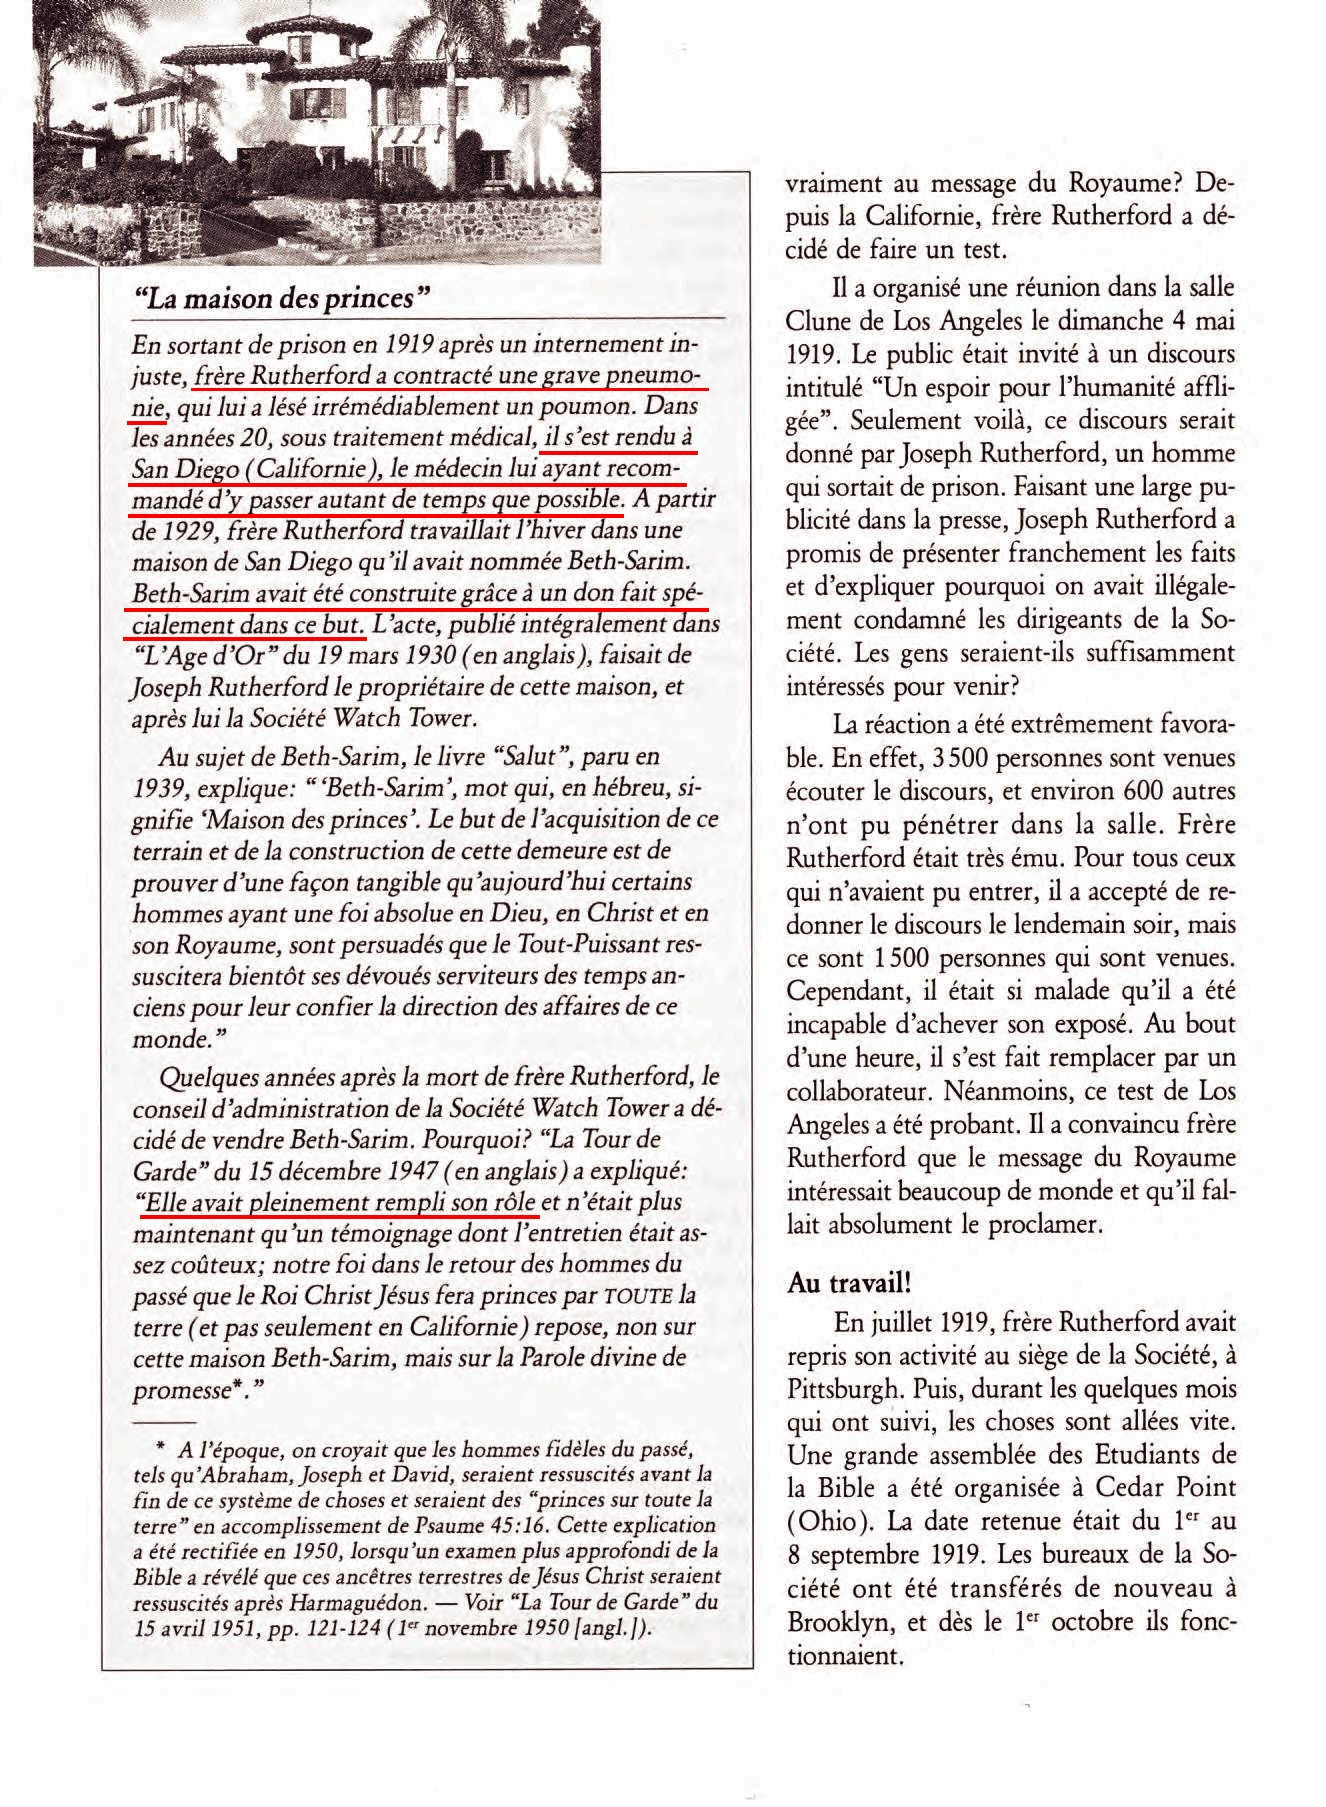 Les fausses prophéties par la Société watch tower - Page 4 Kwo1